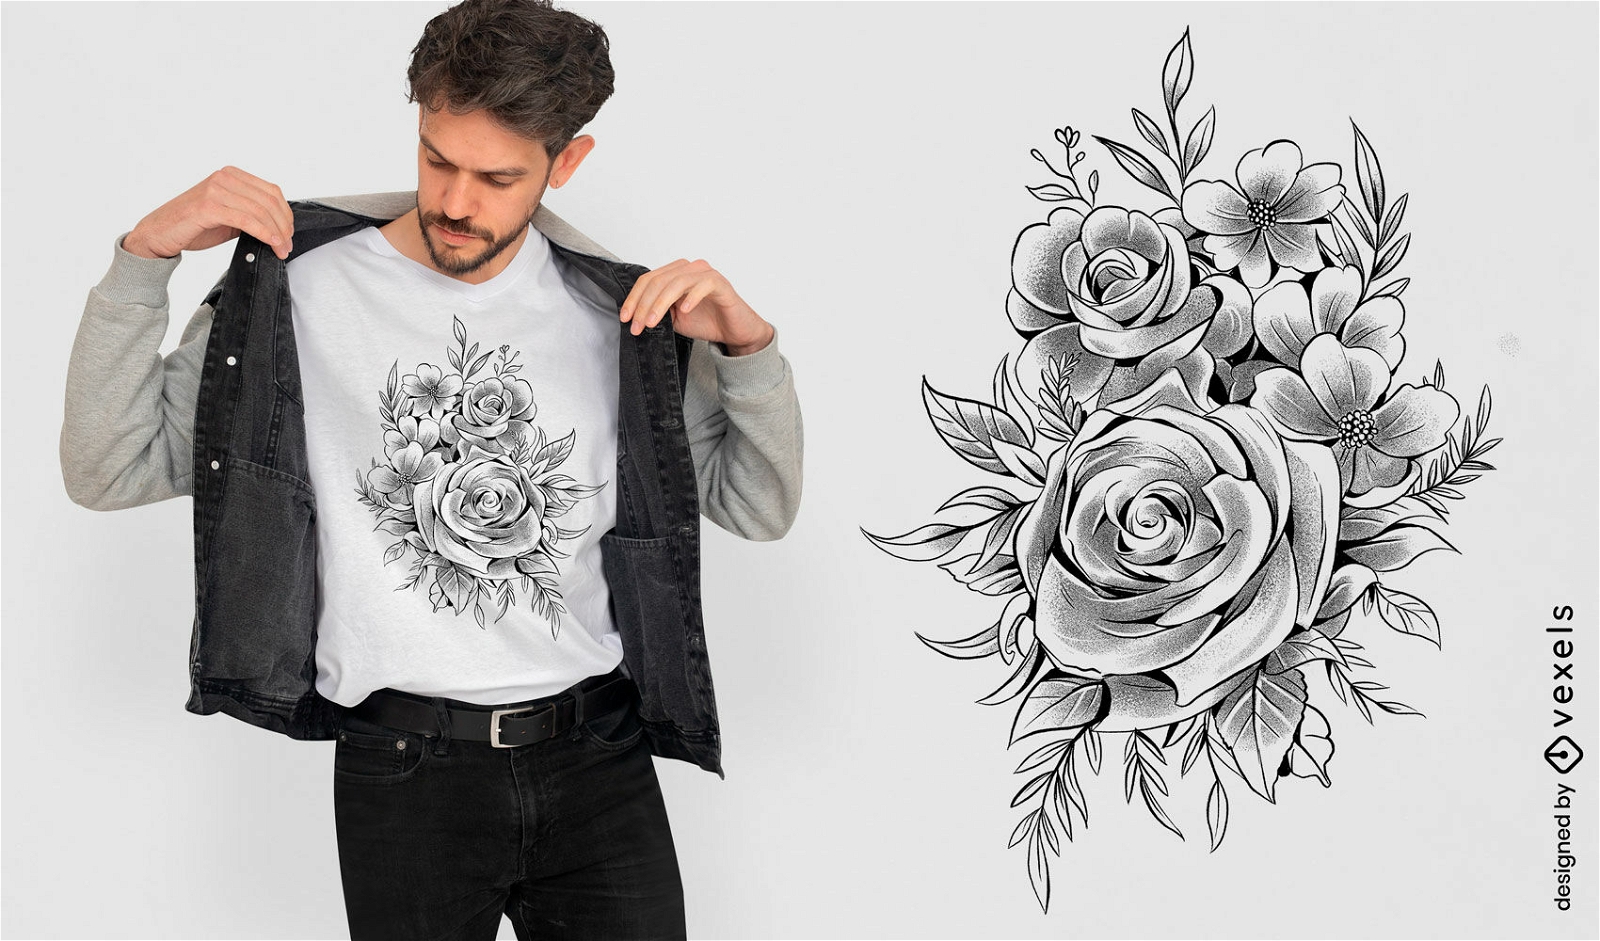 Diseño de camiseta de naturaleza de rosas y hojas.